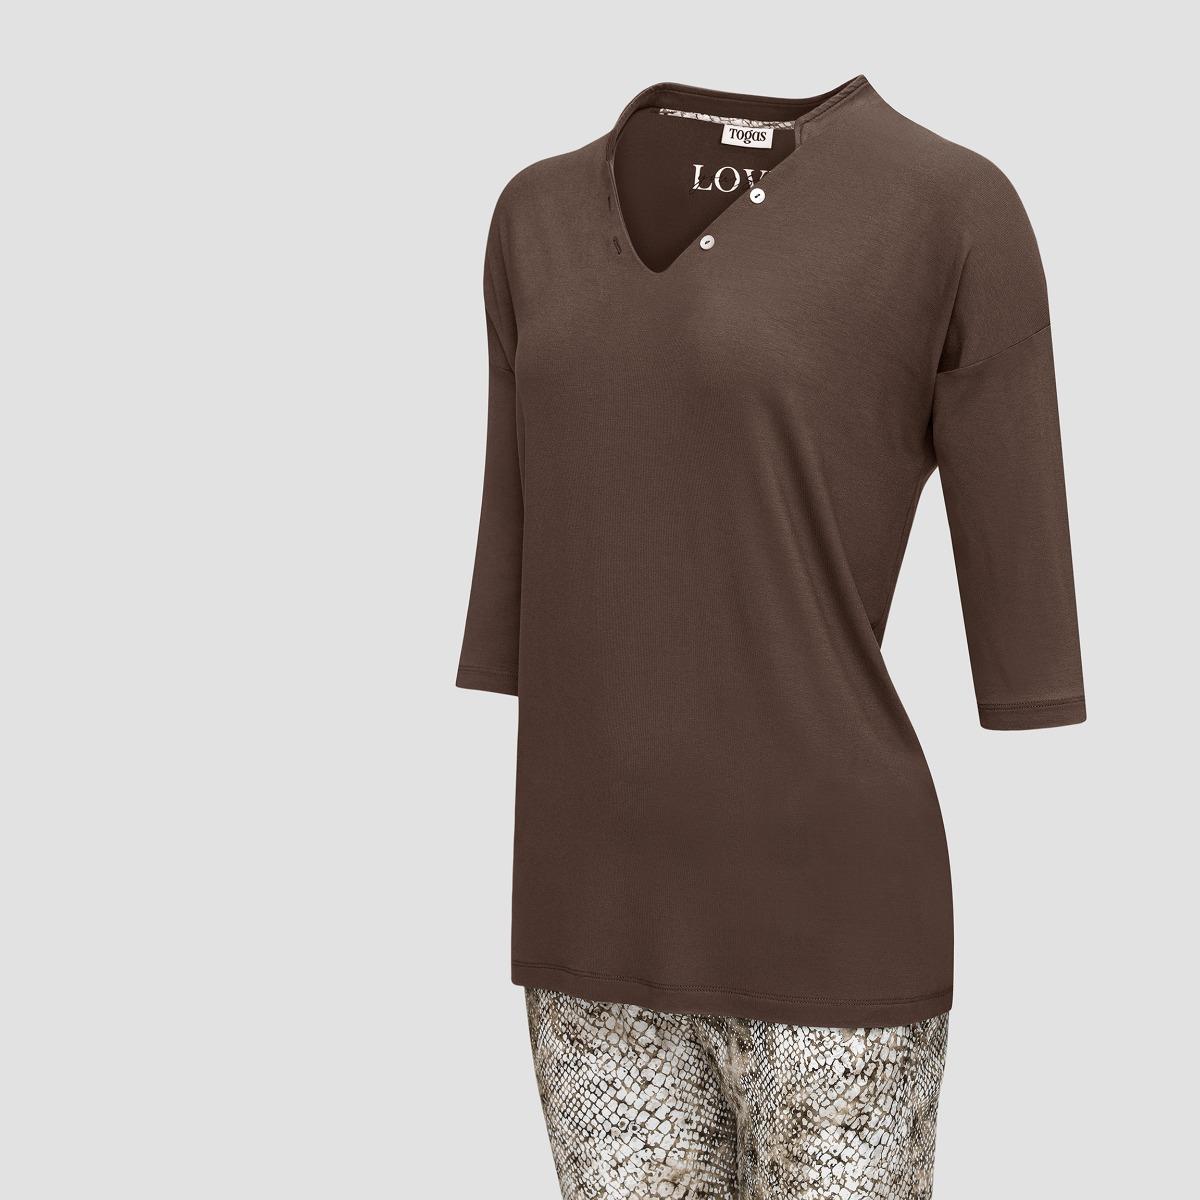 Пижама Togas Селиса коричневая женская xs(42), цвет коричневый, размер XS (42) - фото 2